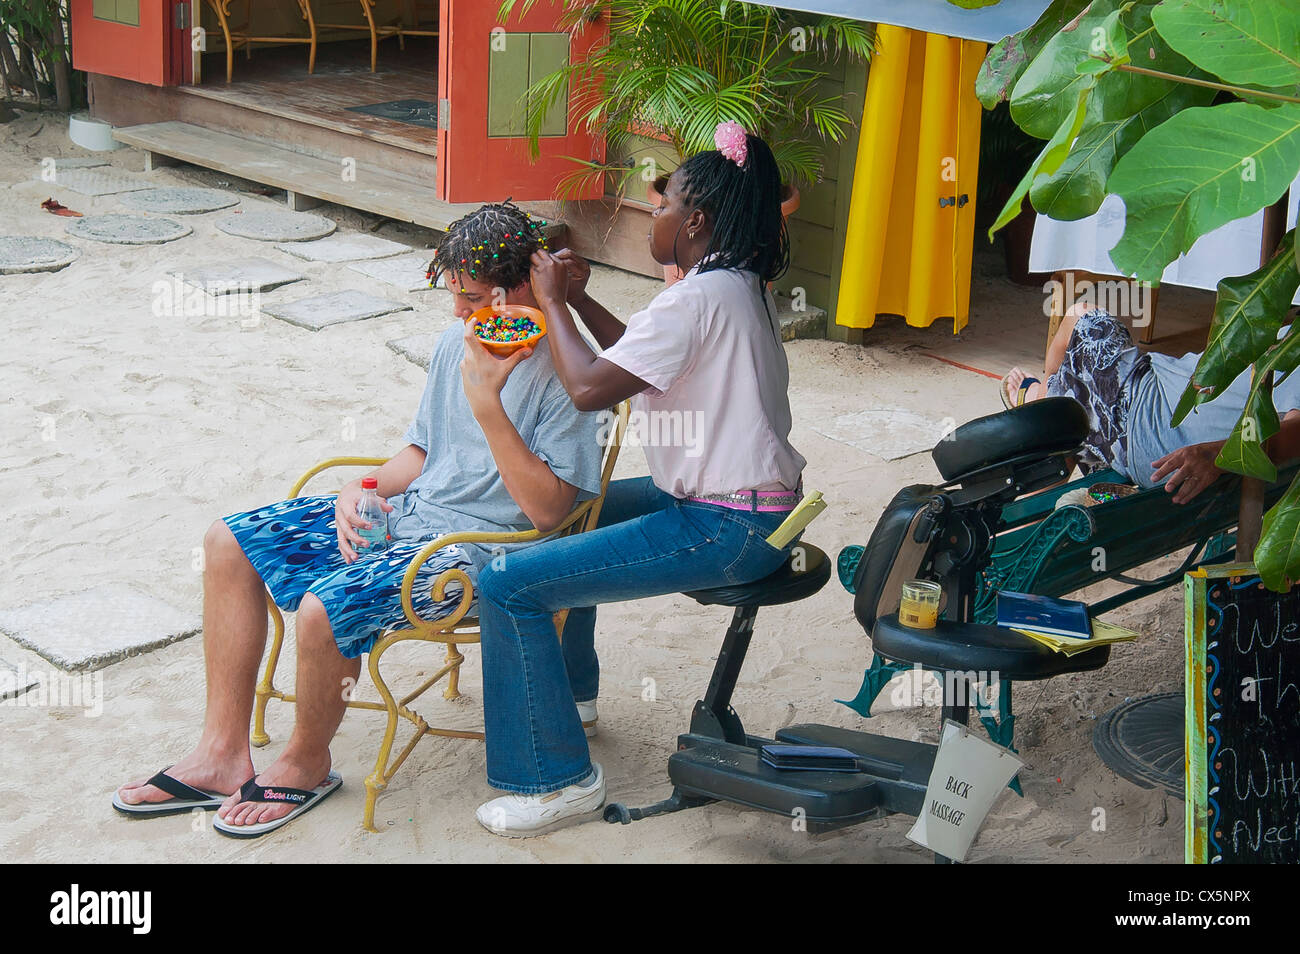 Salon de coiffure local spécifique rend la Jamaïque hairstyle pour les jeunes touristes, Ocho Rios, Jamaïque ouest des Caraïbes Banque D'Images